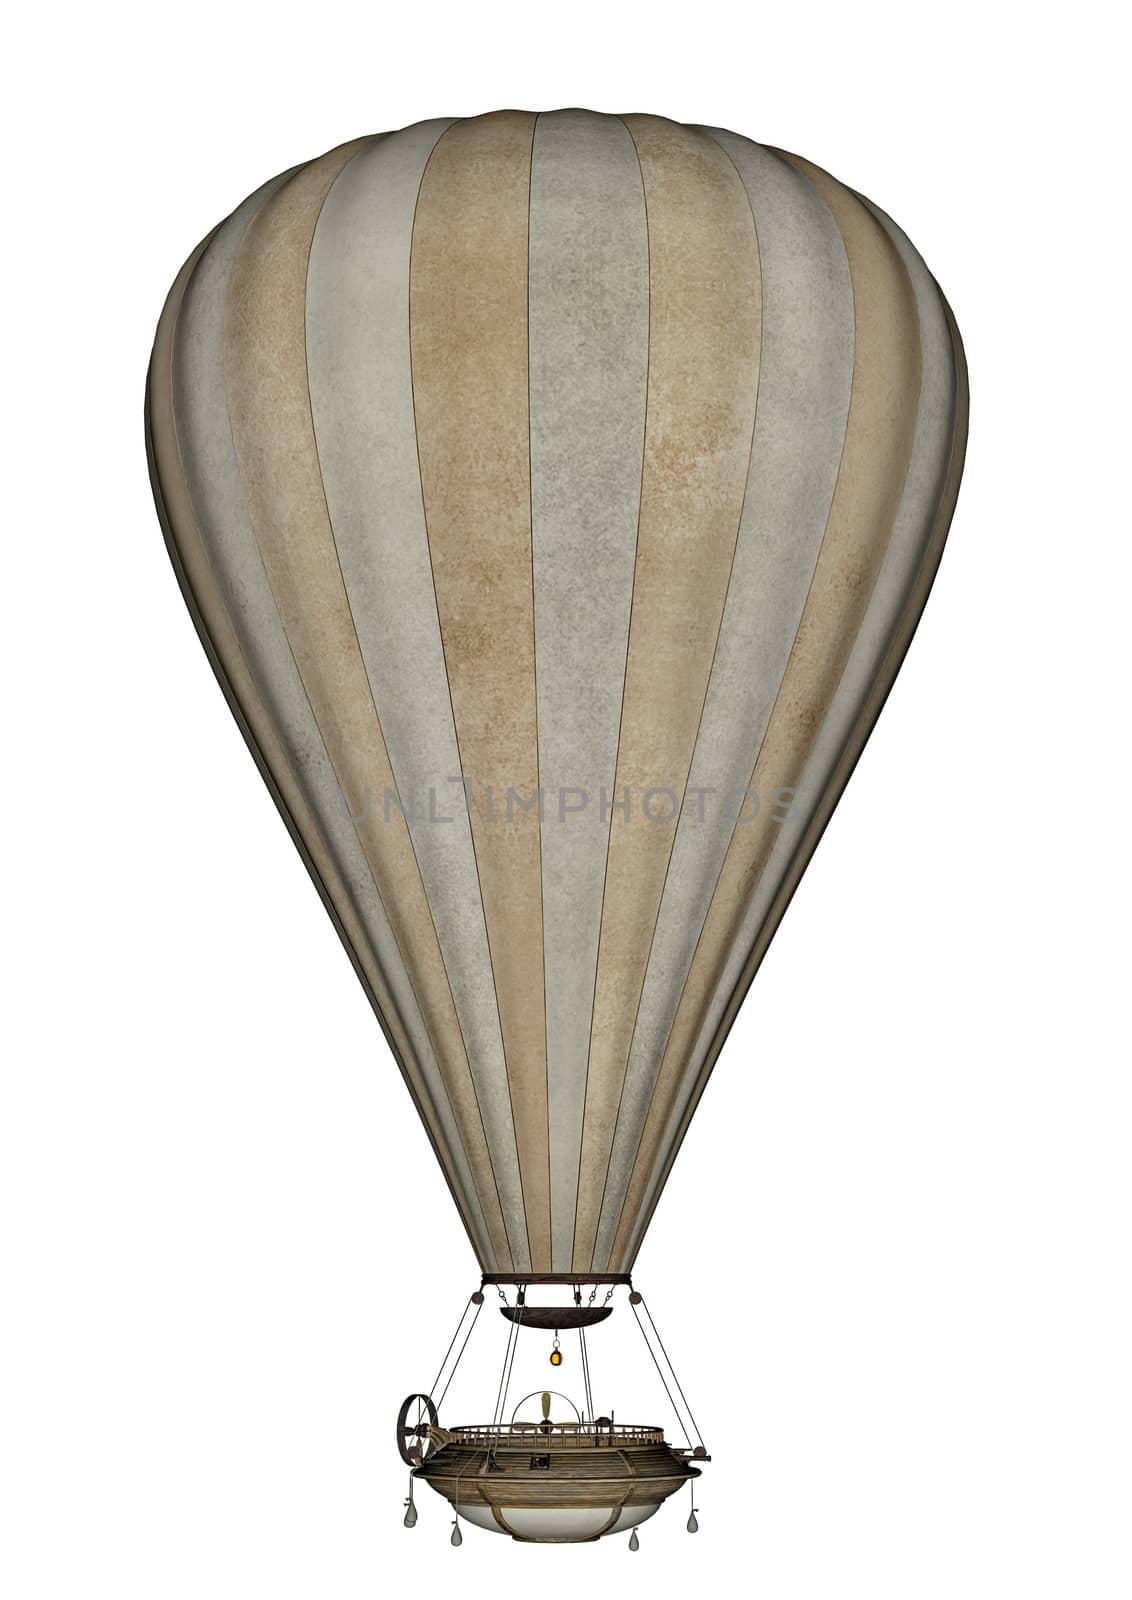 Hot air balloon - 3D render by Elenaphotos21